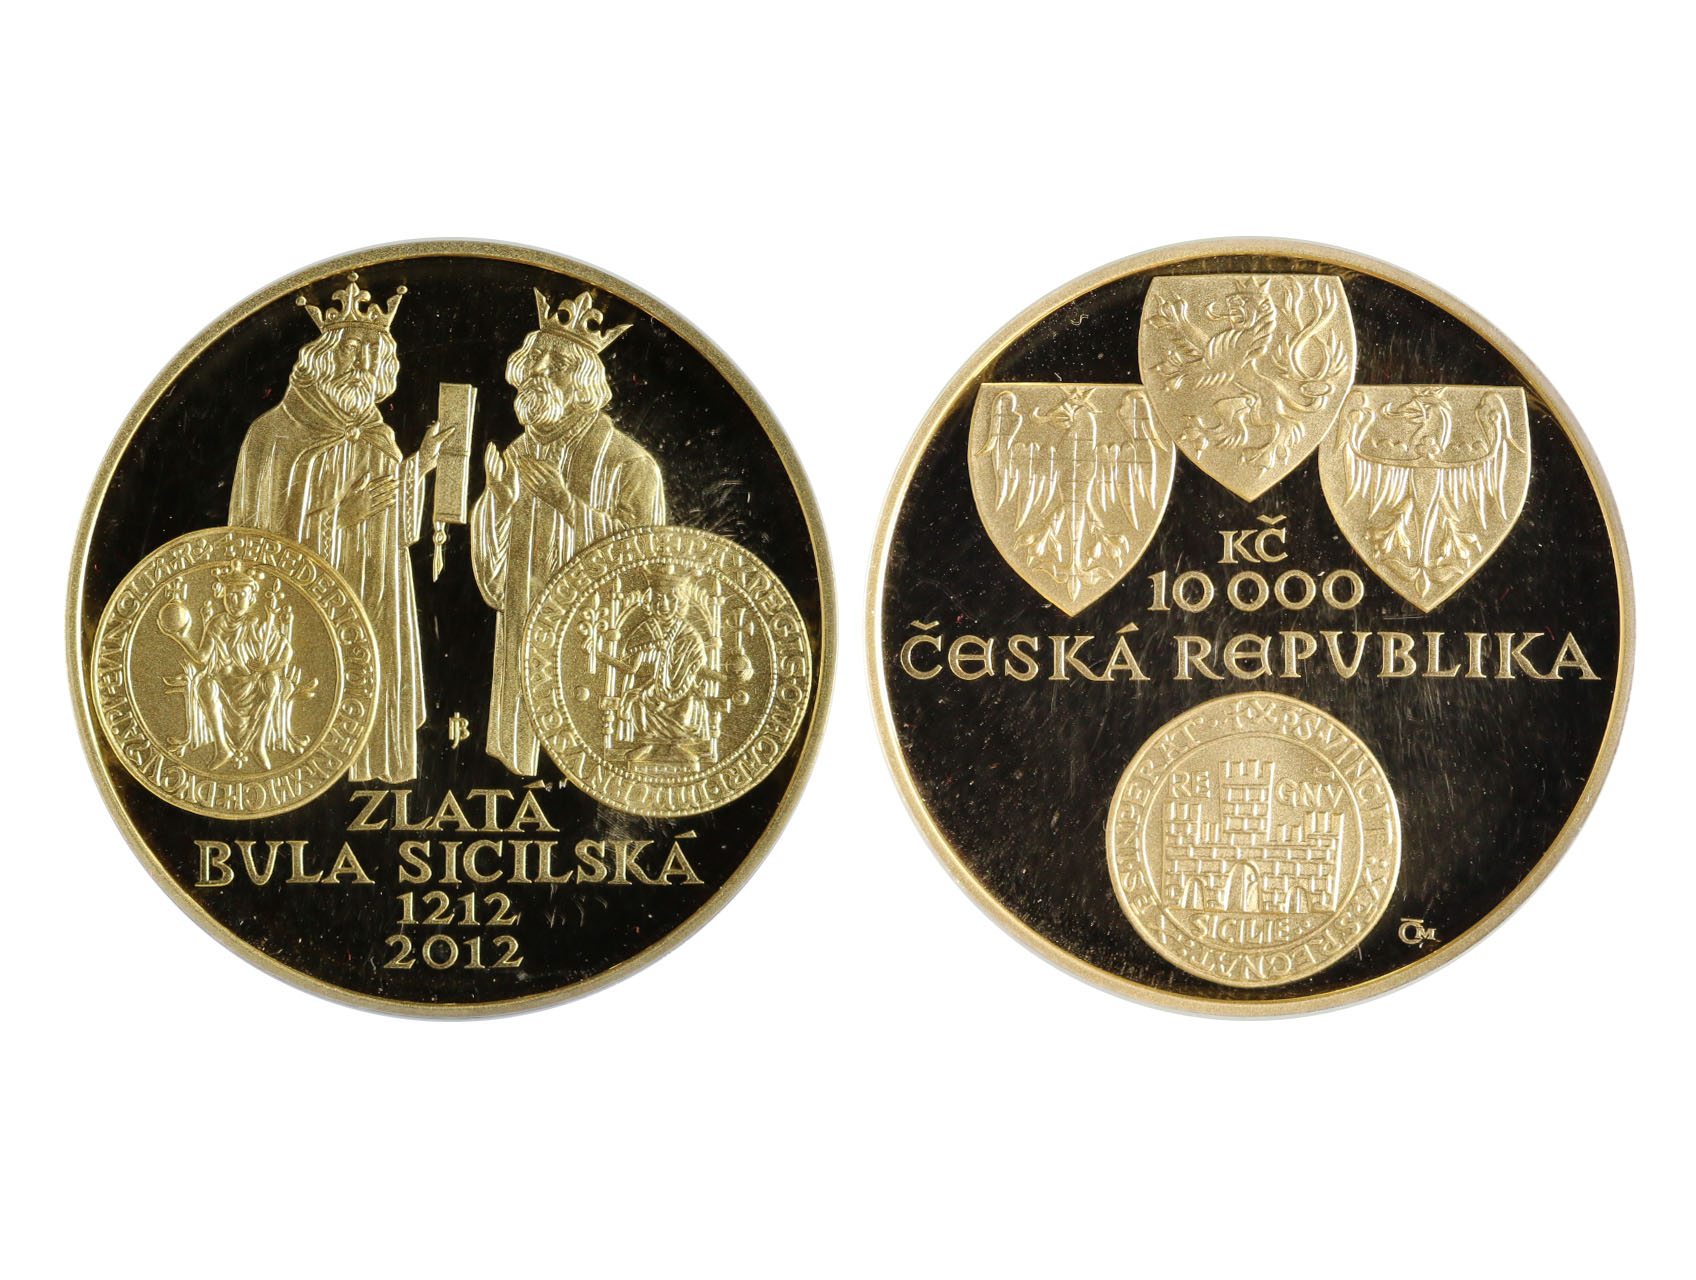 Česká Republika 1993 - 10.000 Kč 2012 Zlatá bula sicilská, náklad 10900 ks, 31,107g, etue, certifikát, kvalita PROOF